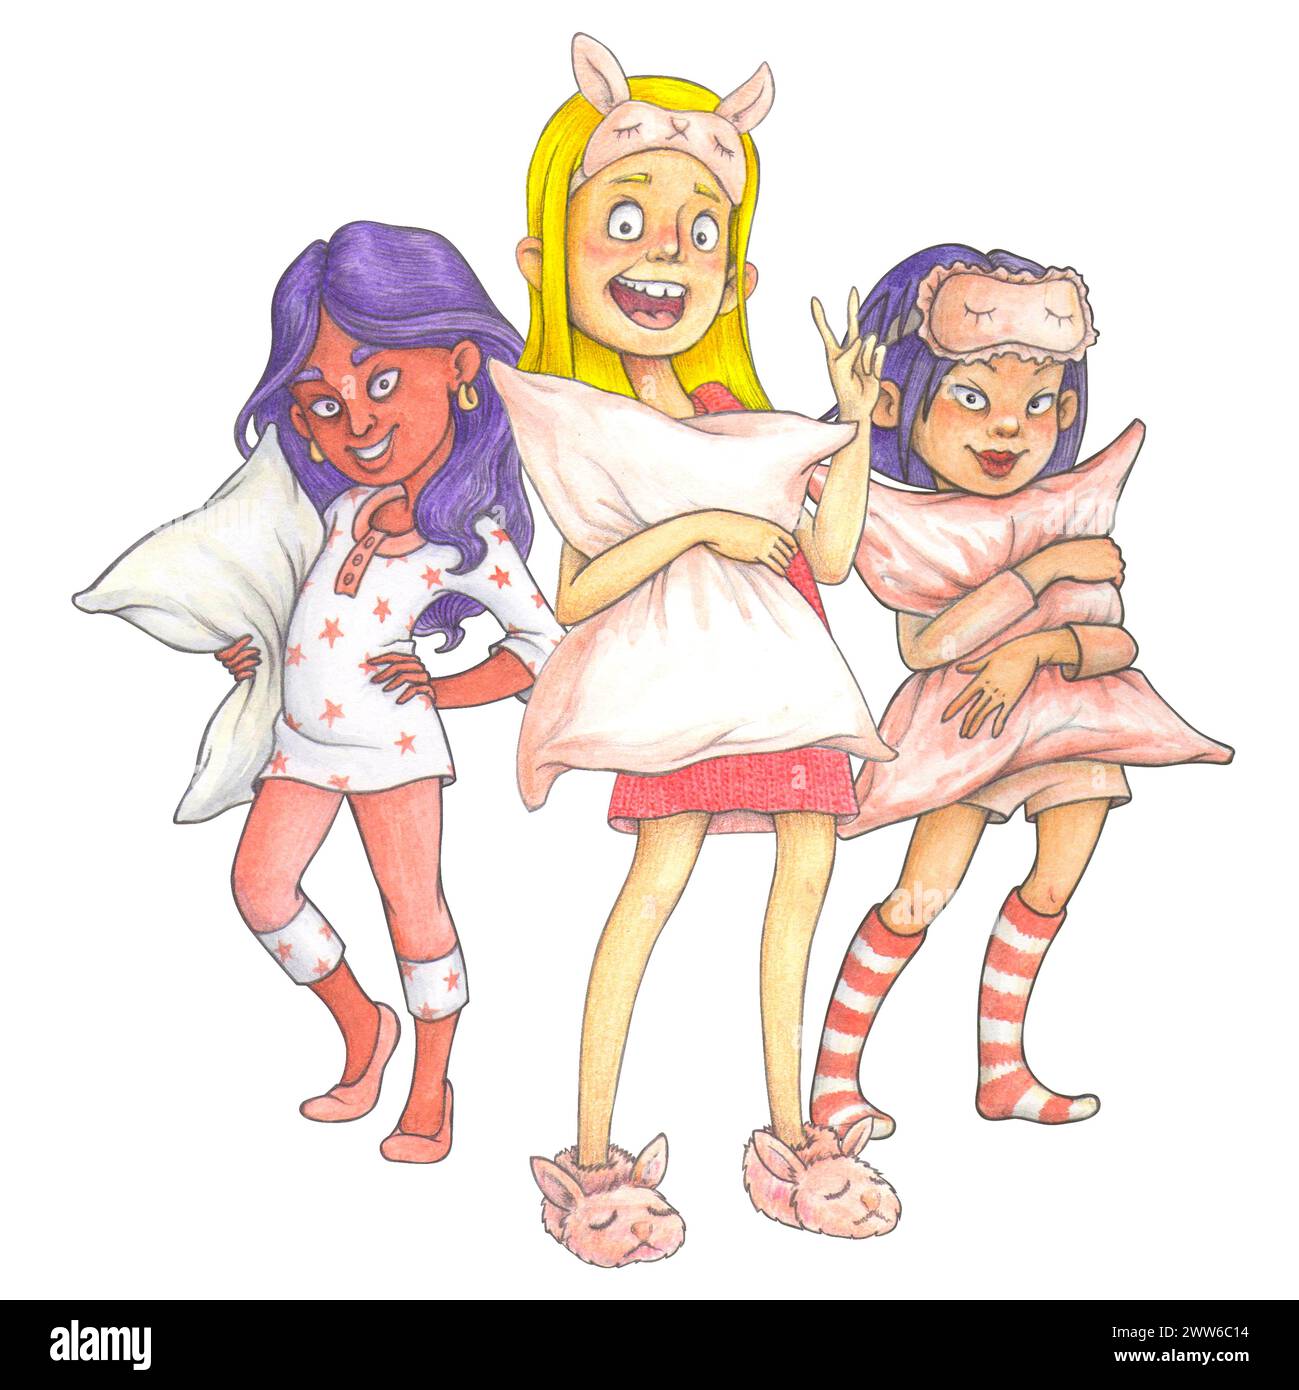 Coole junge Cartoon-Mädchen im Pyjama, bereit für eine Pyjama-Party oder einen internationalen Pyjama-Tag – isolierte handgezeichnete Komposition für das T-Shirt-Design Stockfoto